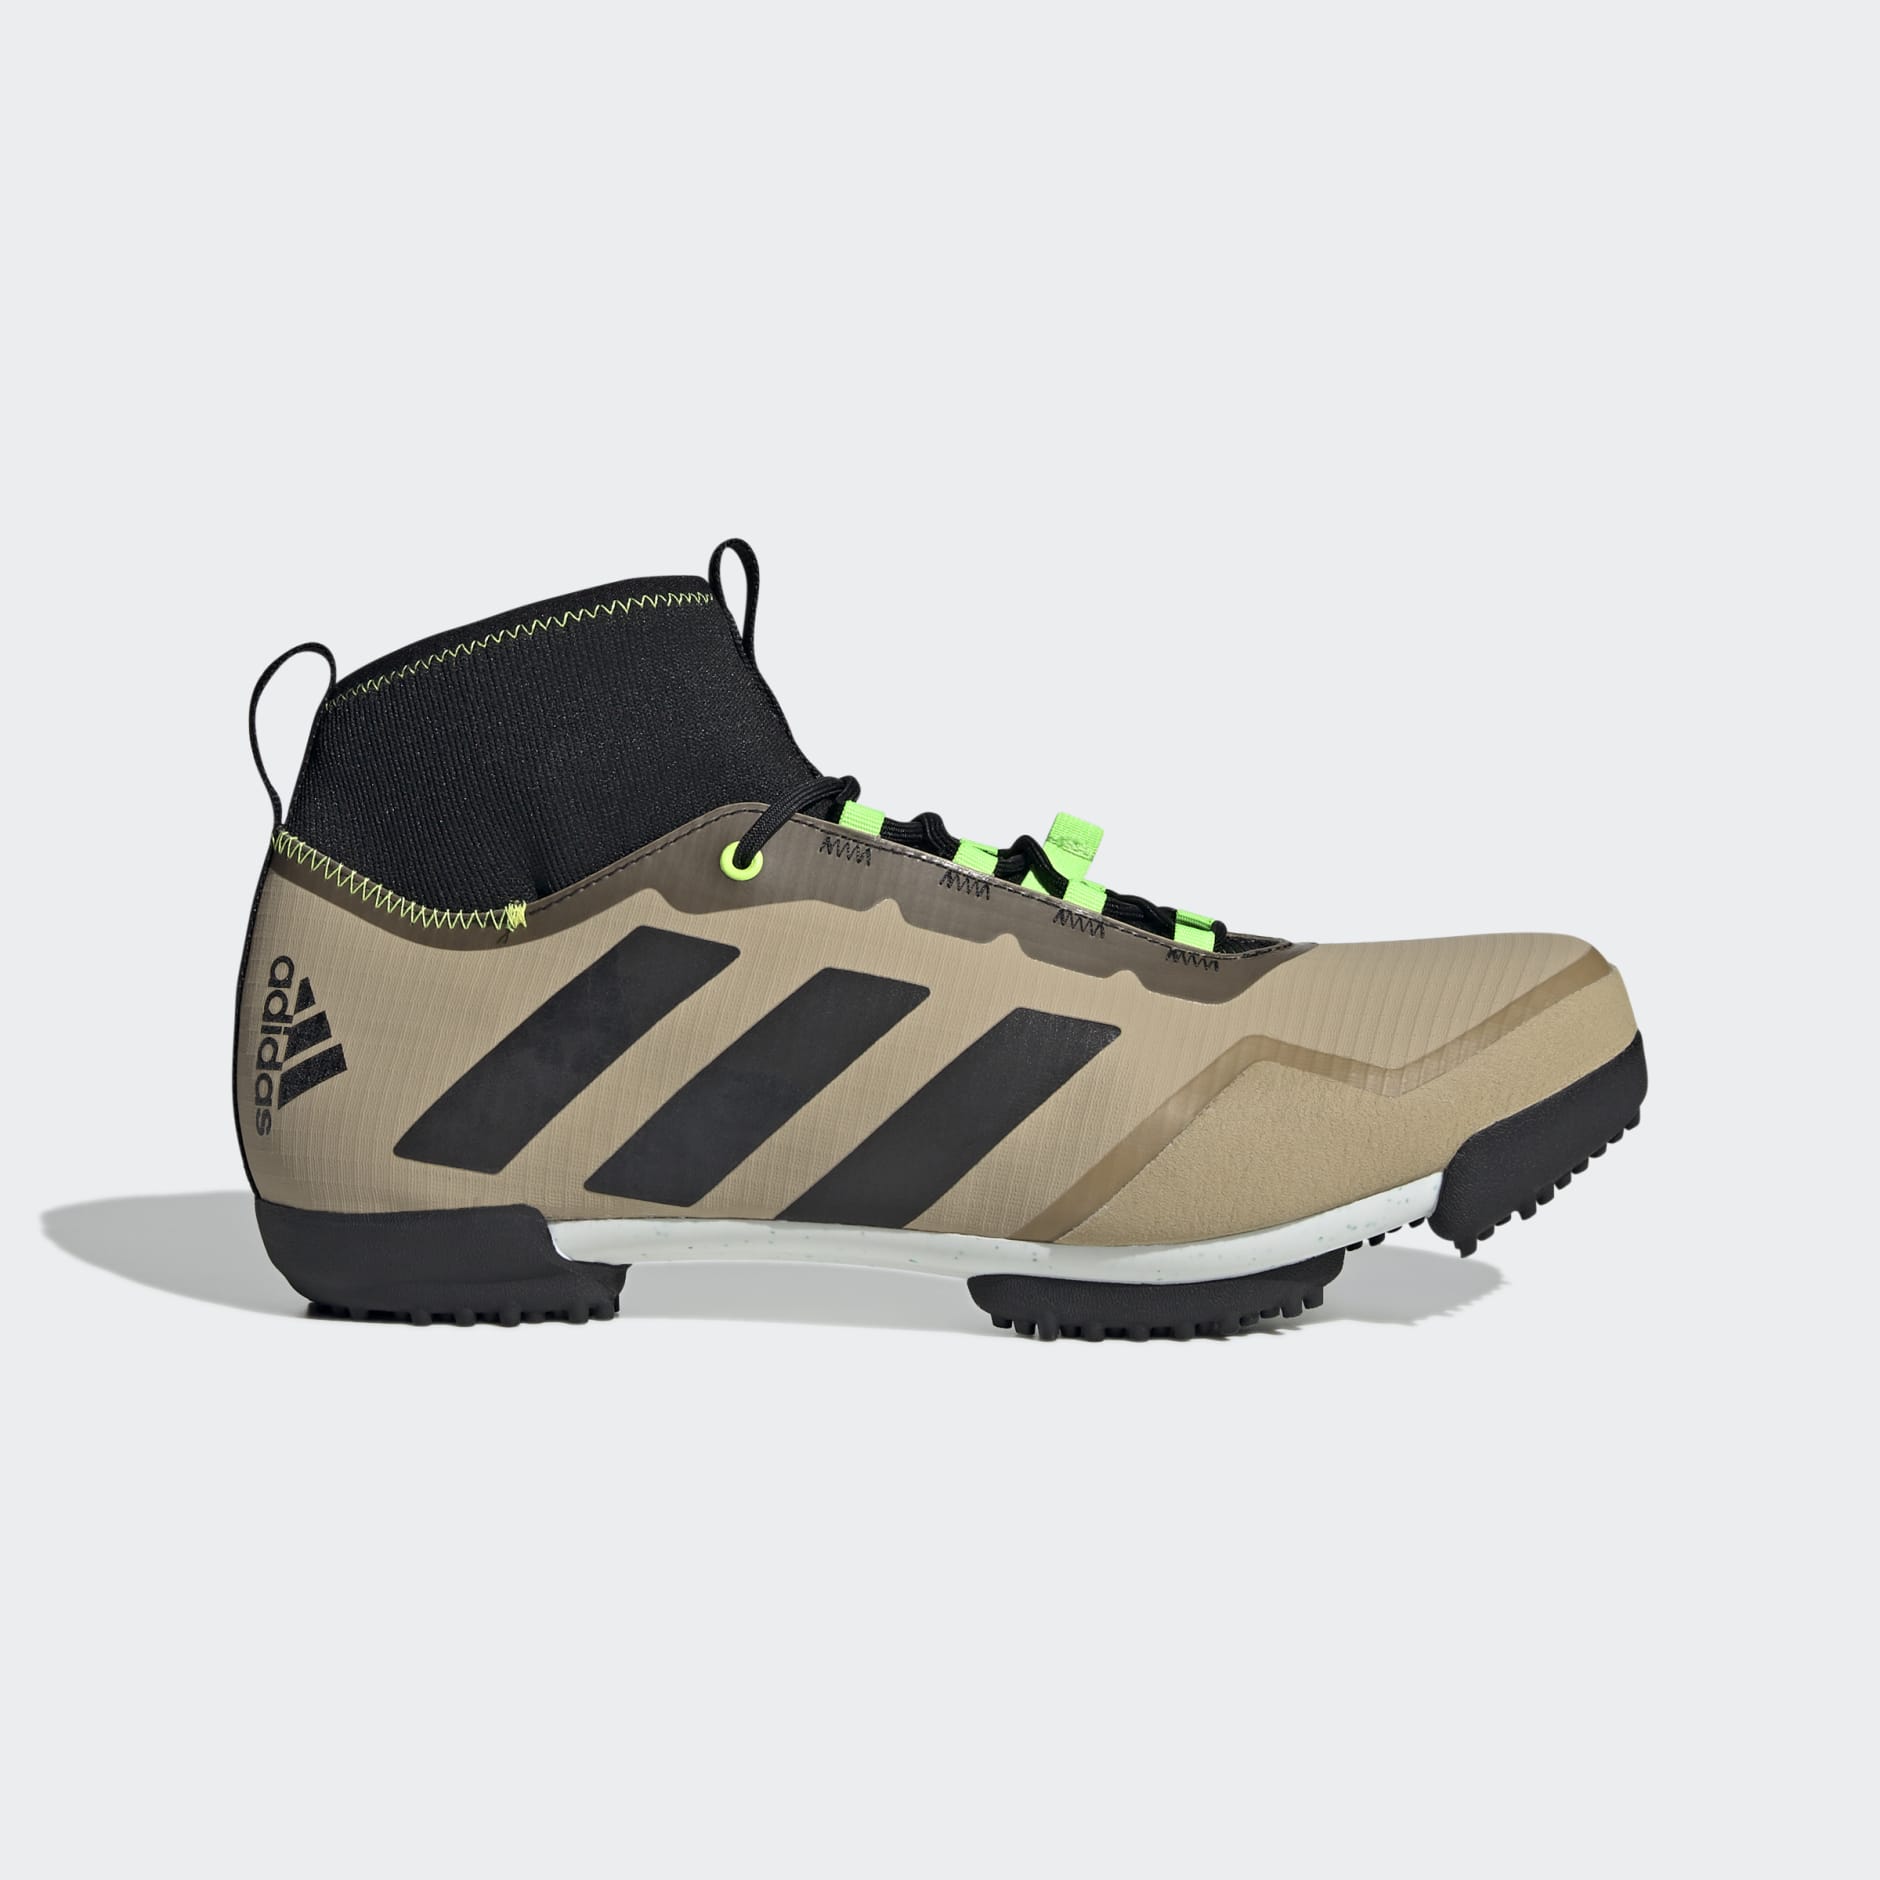 paars meerderheid hoofdpijn adidas The Gravel Cycling Shoes - Beige | adidas GH